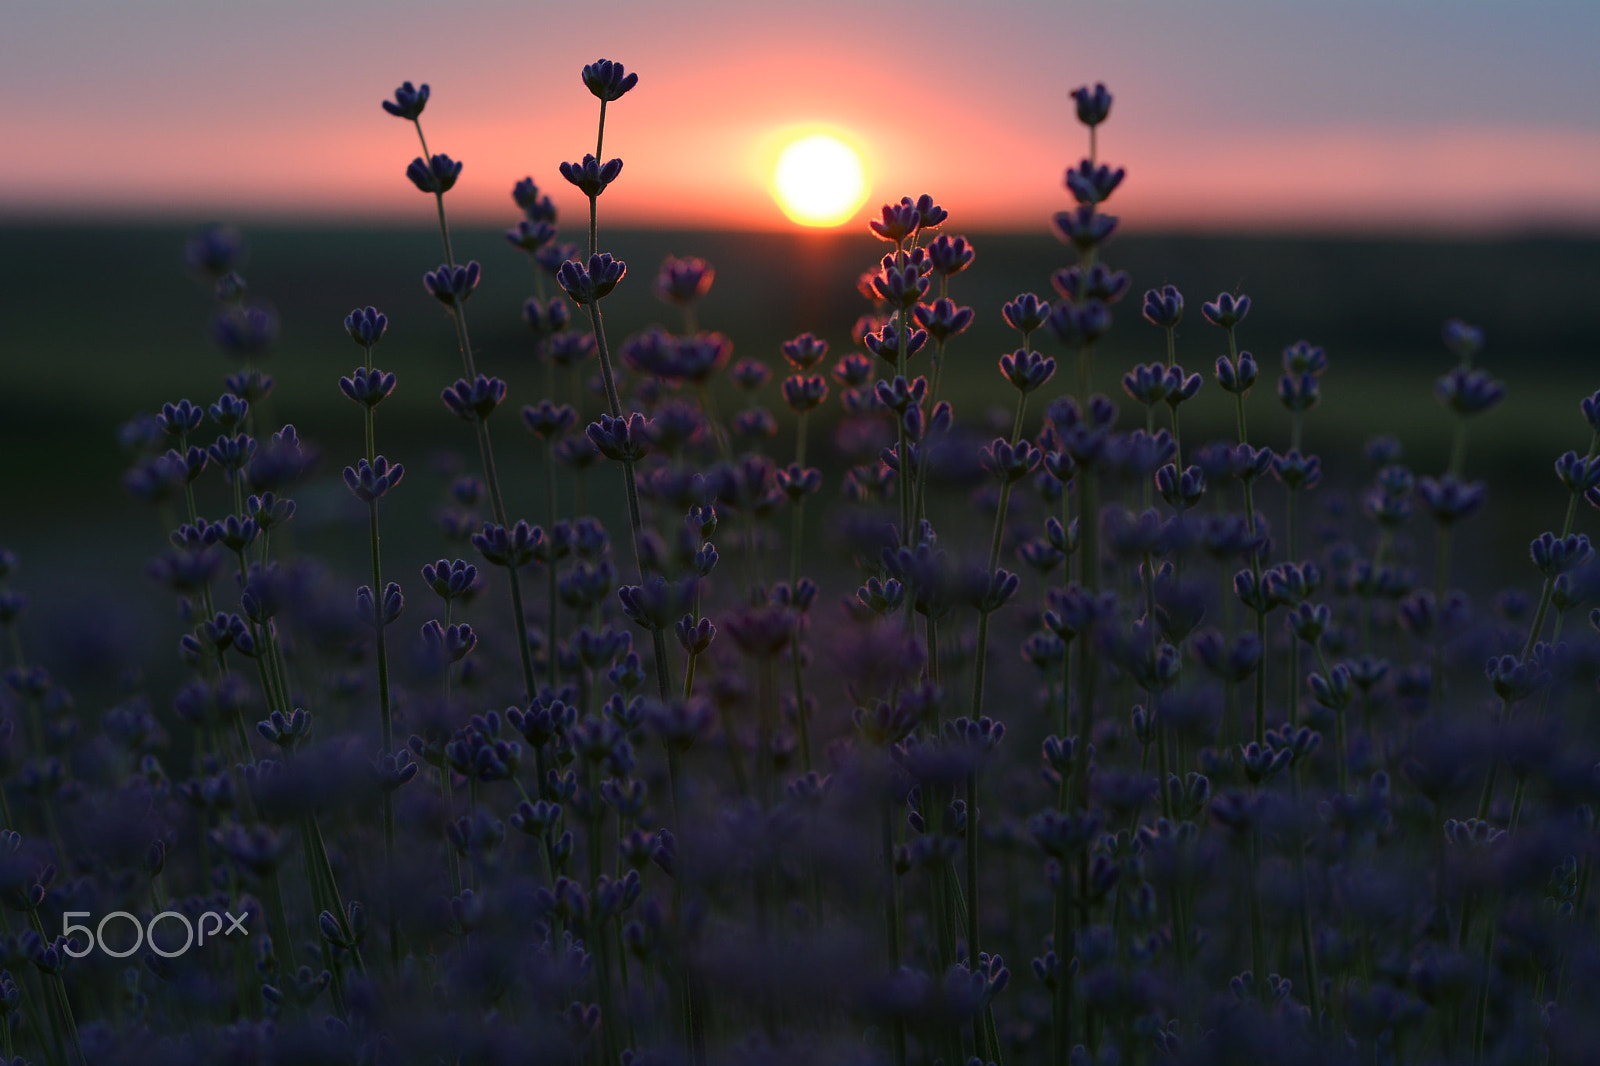 Nikon D7100 + Nikon AF Nikkor 50mm F1.8D sample photo. Sunset in lavender photography